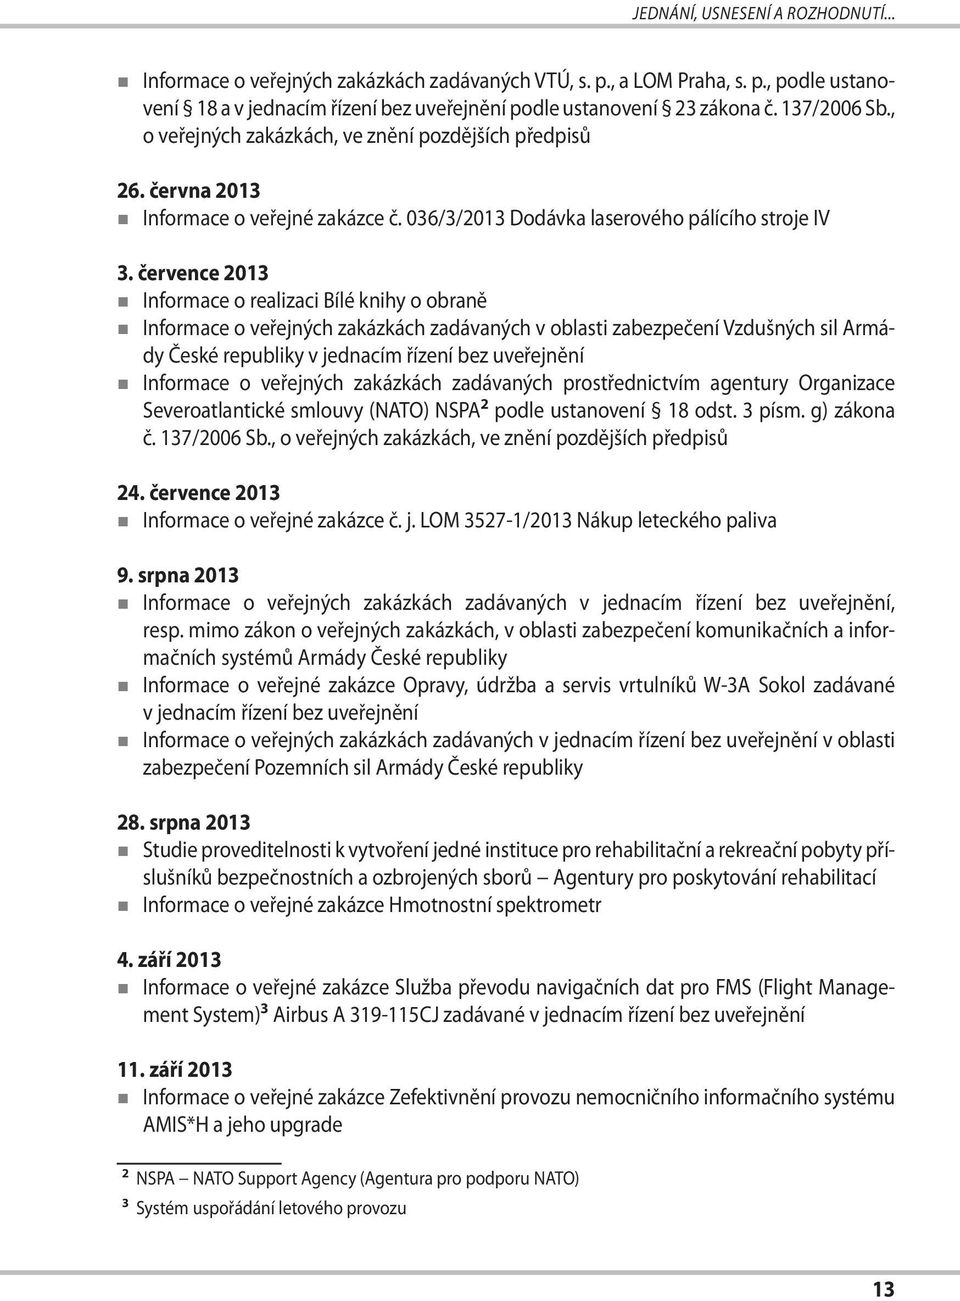 července 2013 Informace o realizaci Bílé knihy o obraně Informace o veřejných zakázkách zadávaných v oblasti zabezpečení Vzdušných sil Armády České republiky v jednacím řízení bez uveřejnění